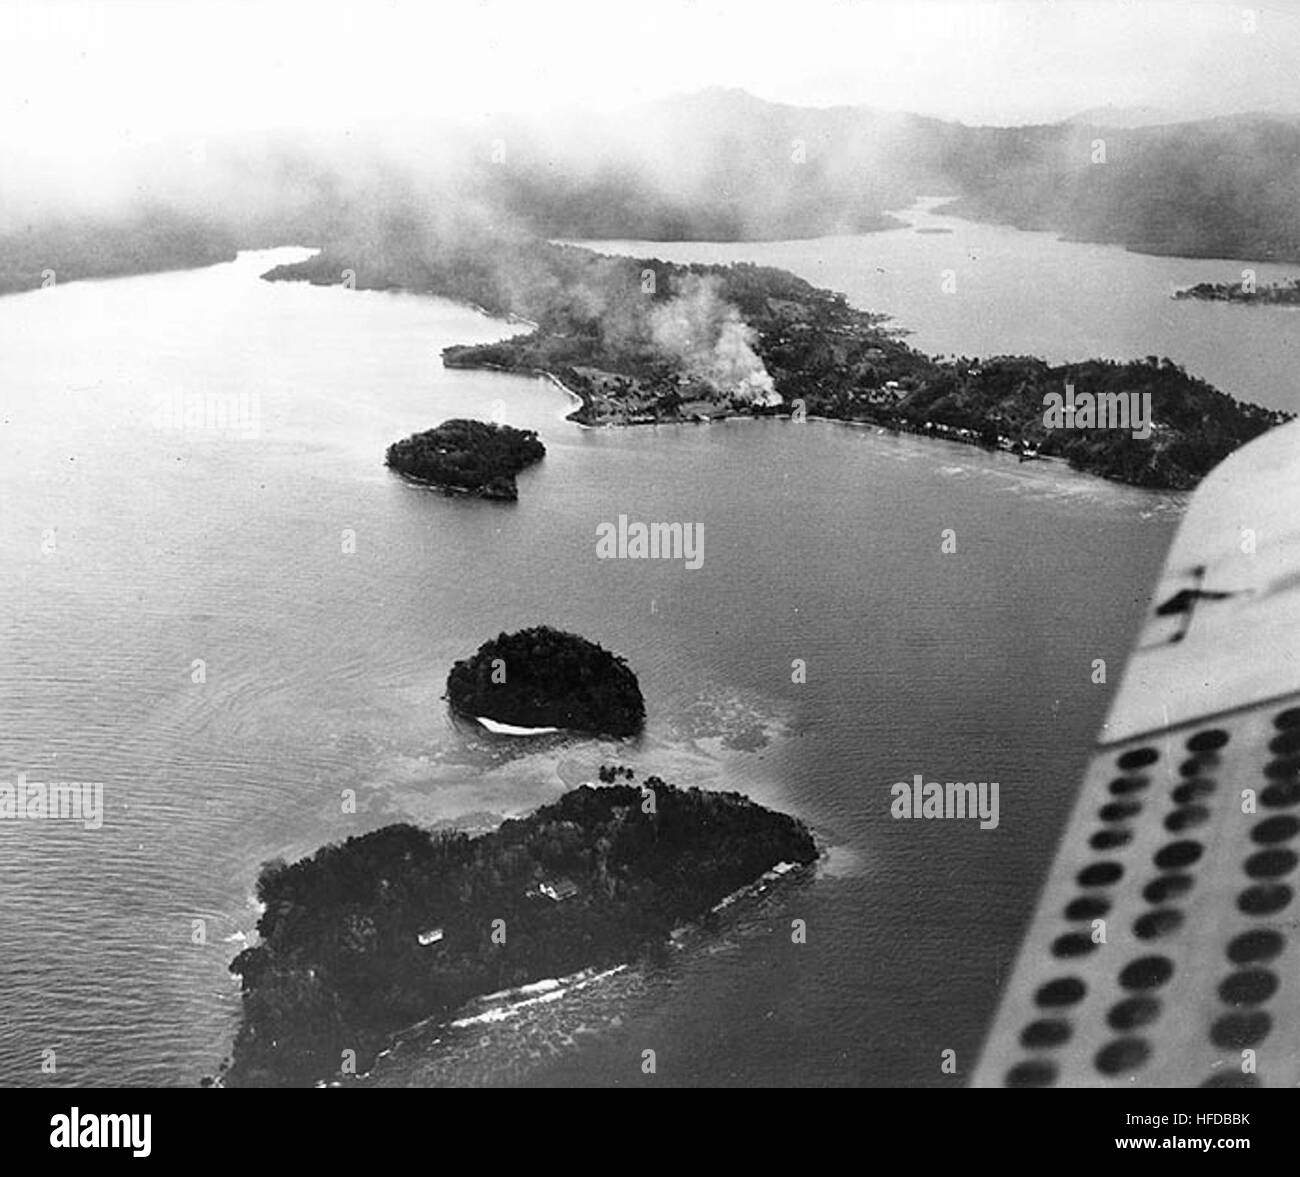 Guadalcanal-Tulagi, Août 1942 : feux brûlent près du terrain de cricket de Tulagi, après bombardement par avions de transport aérien des États-Unis le 7 août 1942, la journée des Marines des États-Unis s'est posé pour capturer l'île. Photographié d'un SMD, ce point de vue ressemble à propos de nord-ouest. Les petites îles au premier plan sont (à partir de la fin de la vue, courir vers Tulagi, tel qu'identifié sur l'impression originale) : Songonangona Kokomtabu, et Mbangai. La photographie originale est venu de l'arrière l'amiral Samuel Eliot Morison's World War II history project fichiers de travail. U.S. Naval Historical Center photo. TulagiAerial2 Banque D'Images